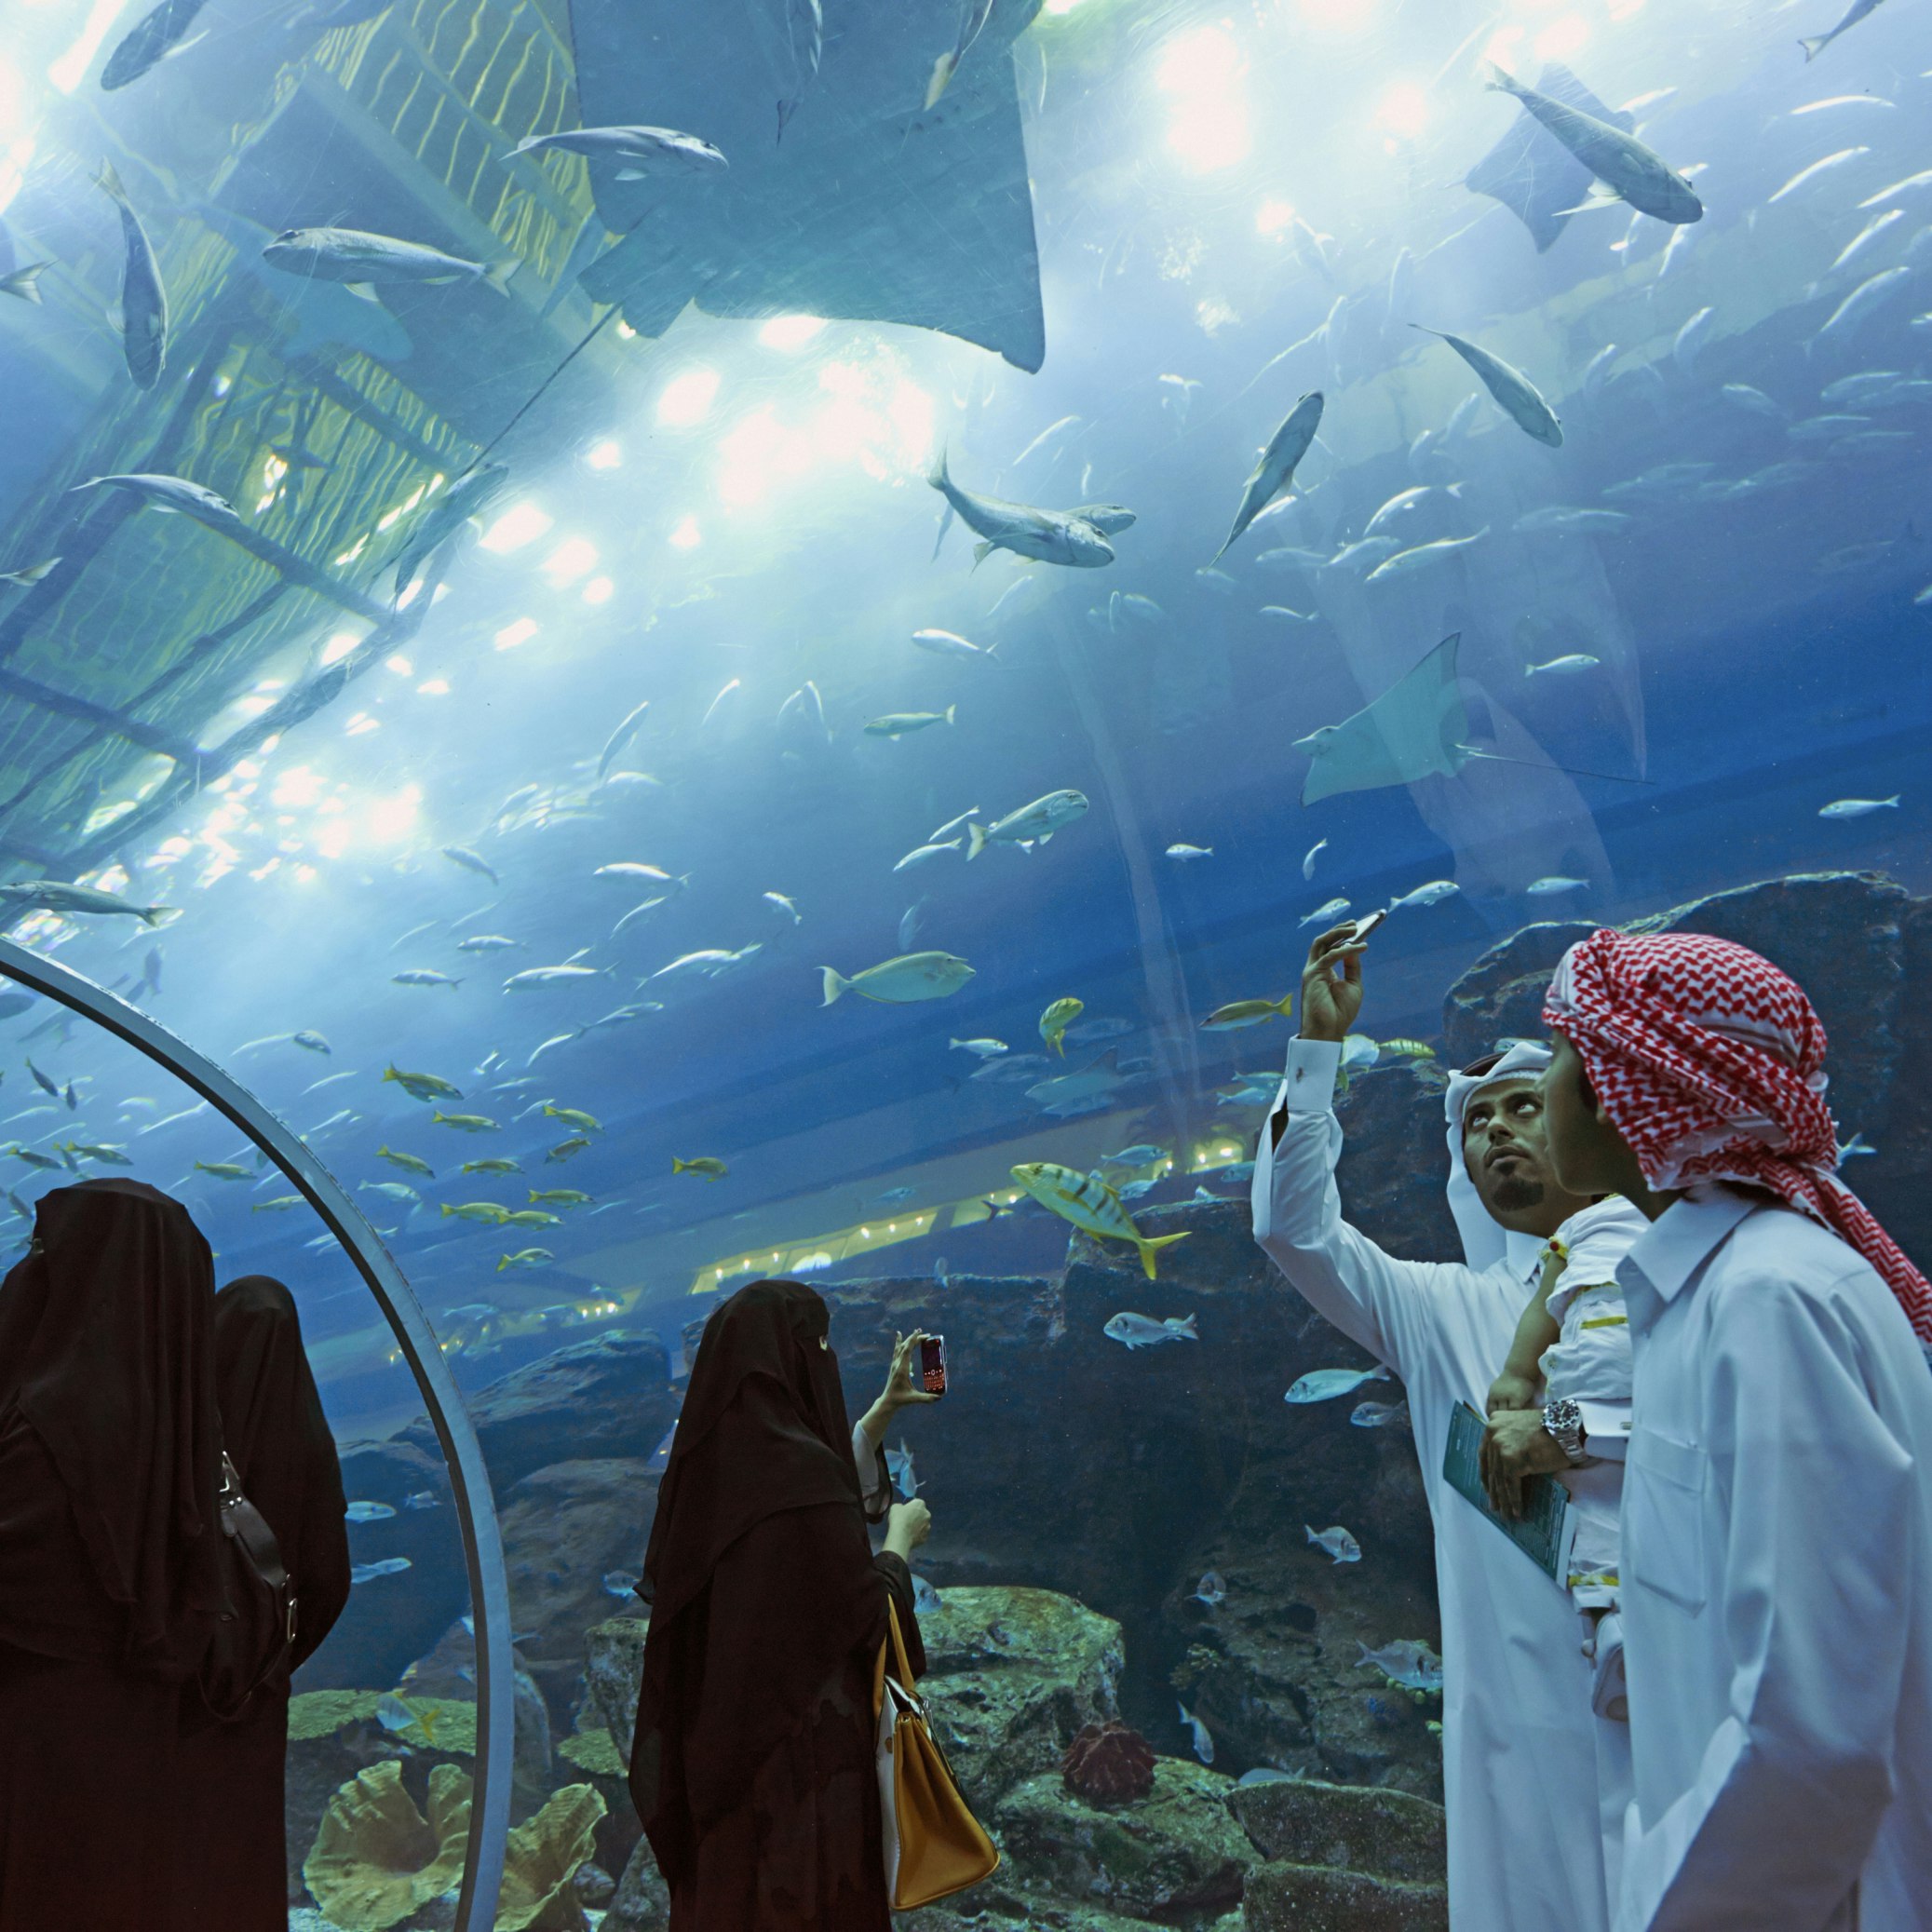 United Arab Emirates, Dubai, Mall, Aquarium